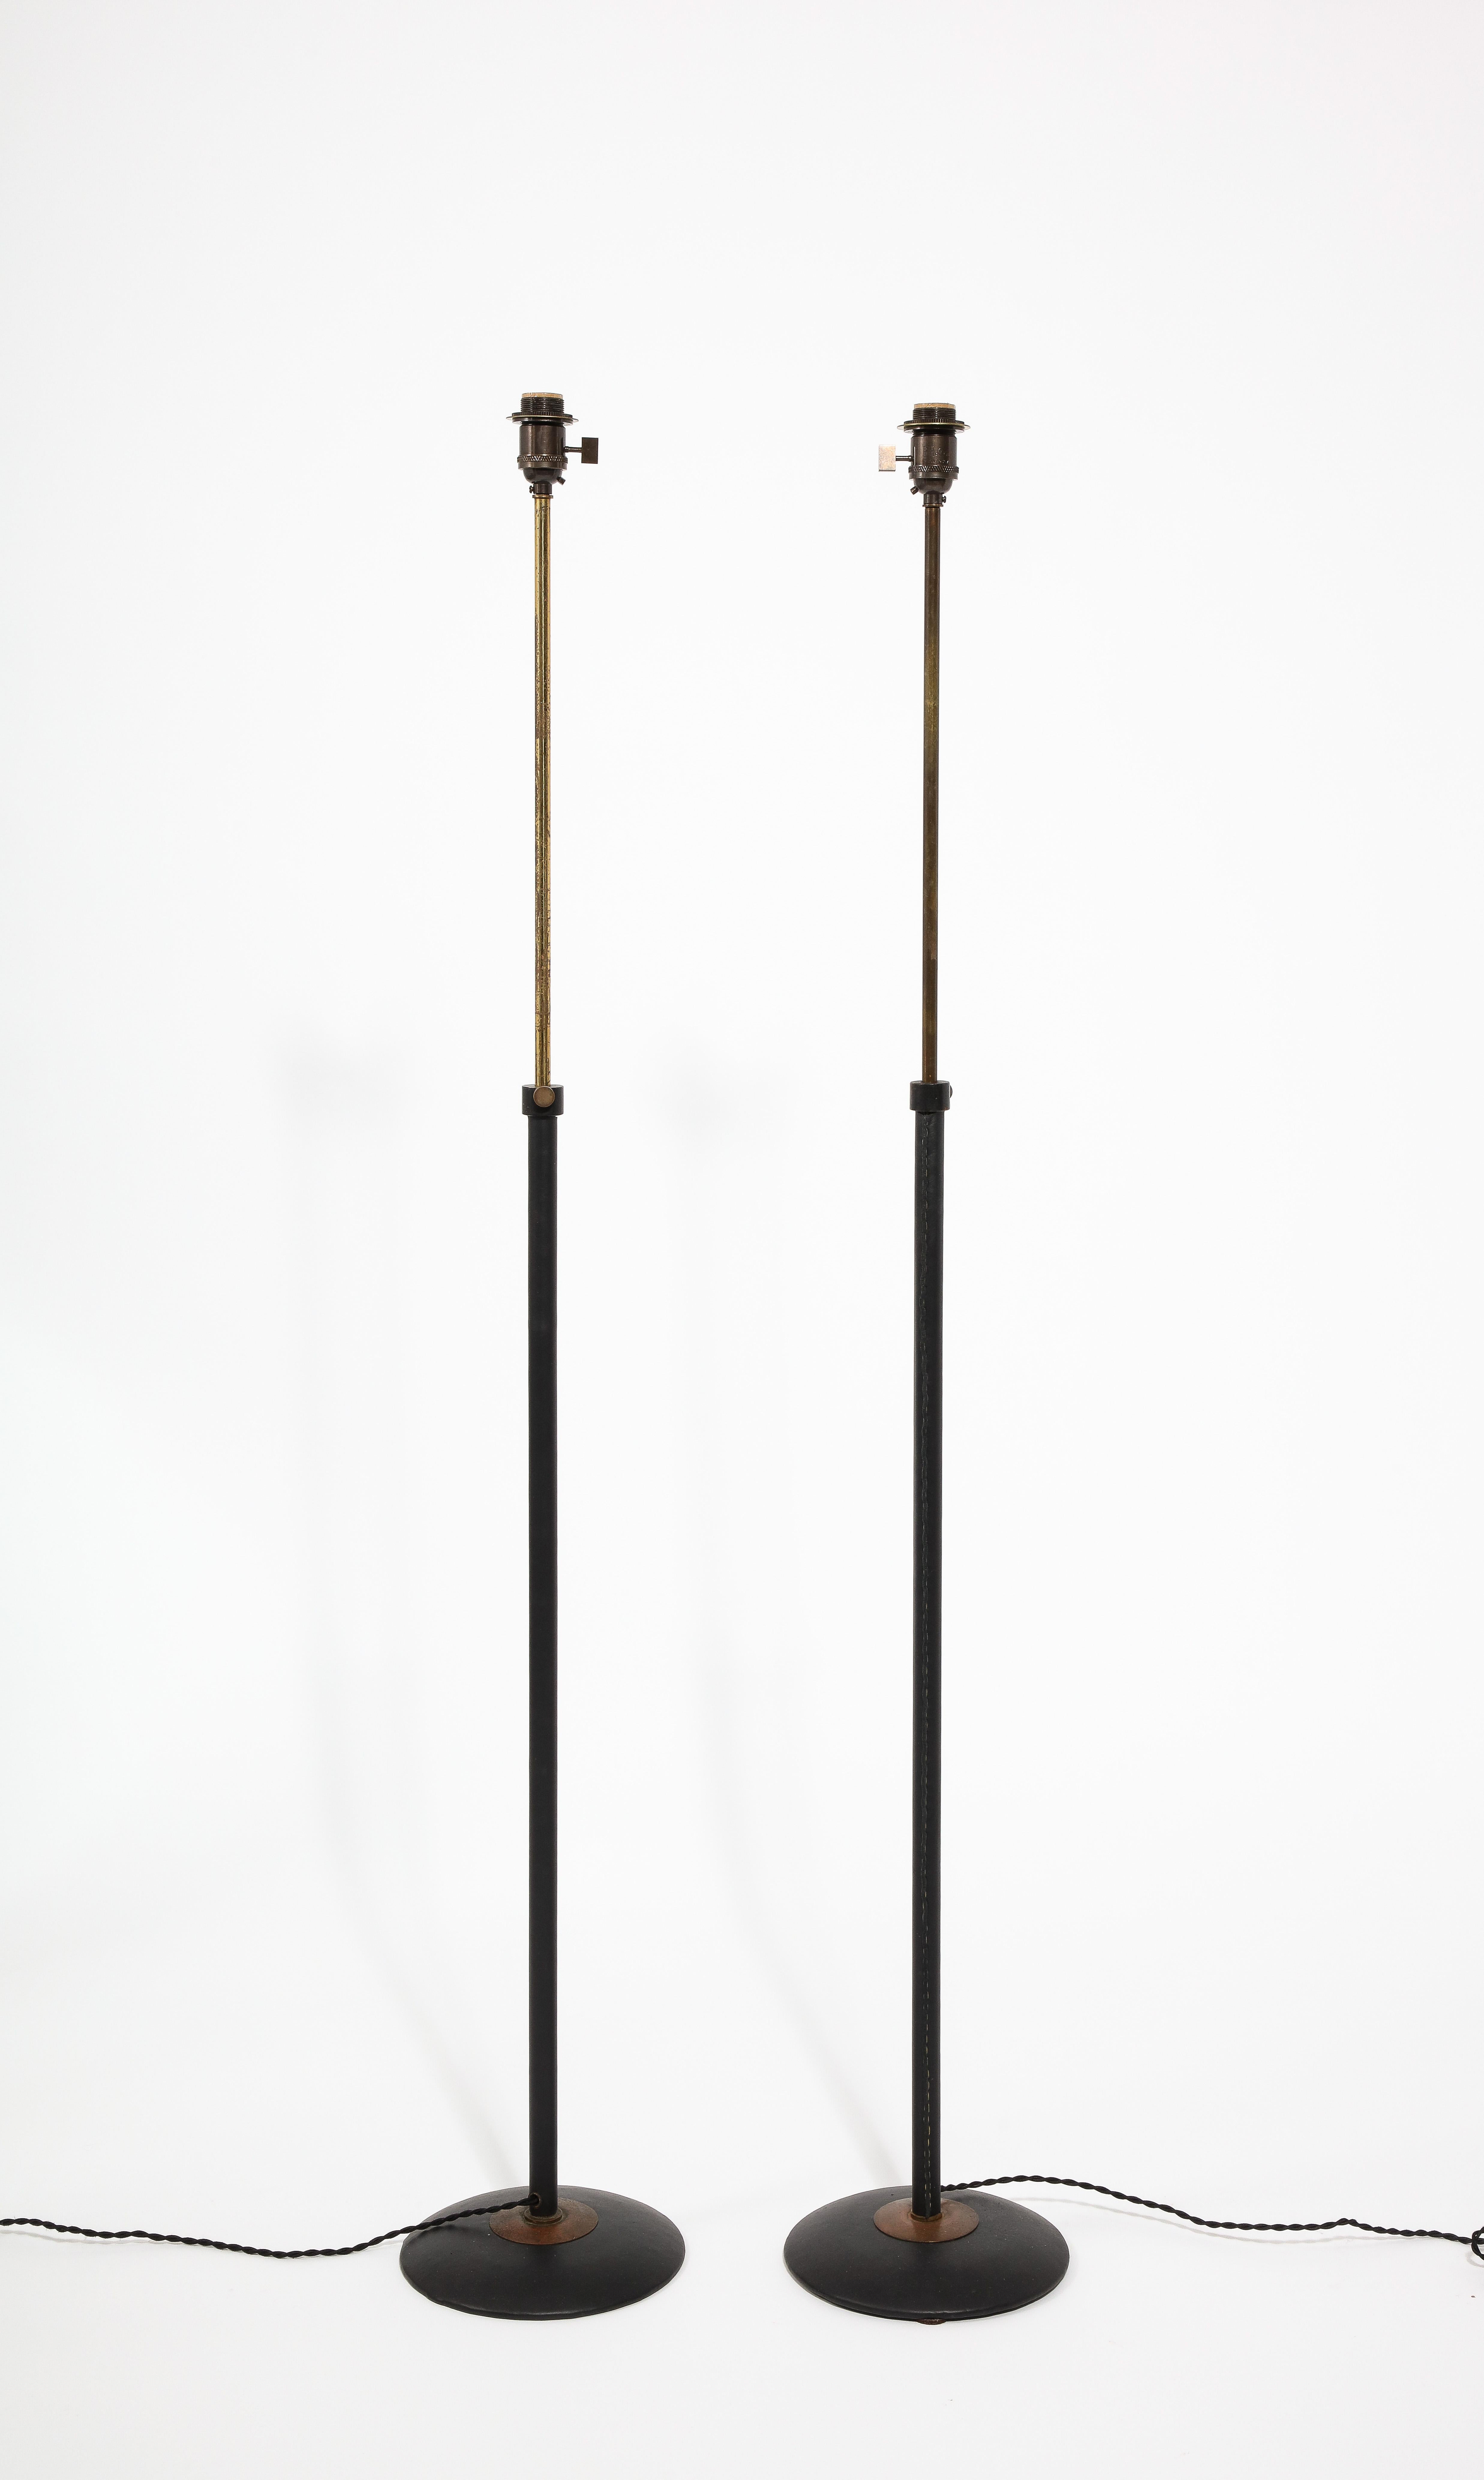 Elegante paire de lampadaires télescopiques enveloppés de cuir noir. Recâblé. Des abat-jour sont disponibles sur demande.